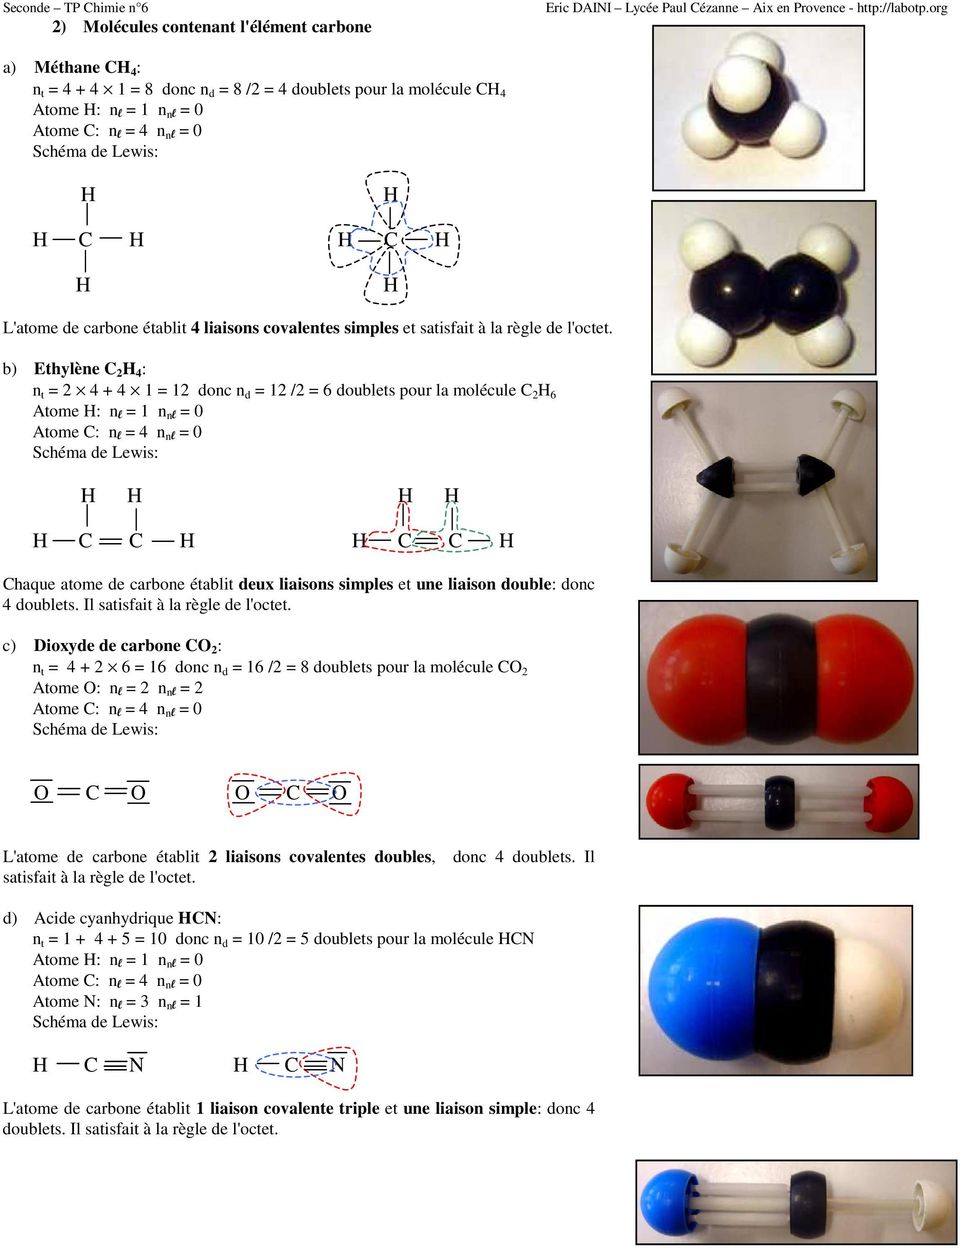 b) Ethylène C 2 4 : n t = 2 4 + 4 1 = 12 donc n d = 12 /2 = 6 doublets pour la molécule C 2 6 Atome : n l = 1 n nl = 0 C C C C Chaque atome de carbone établit deux liaisons simples et une liaison